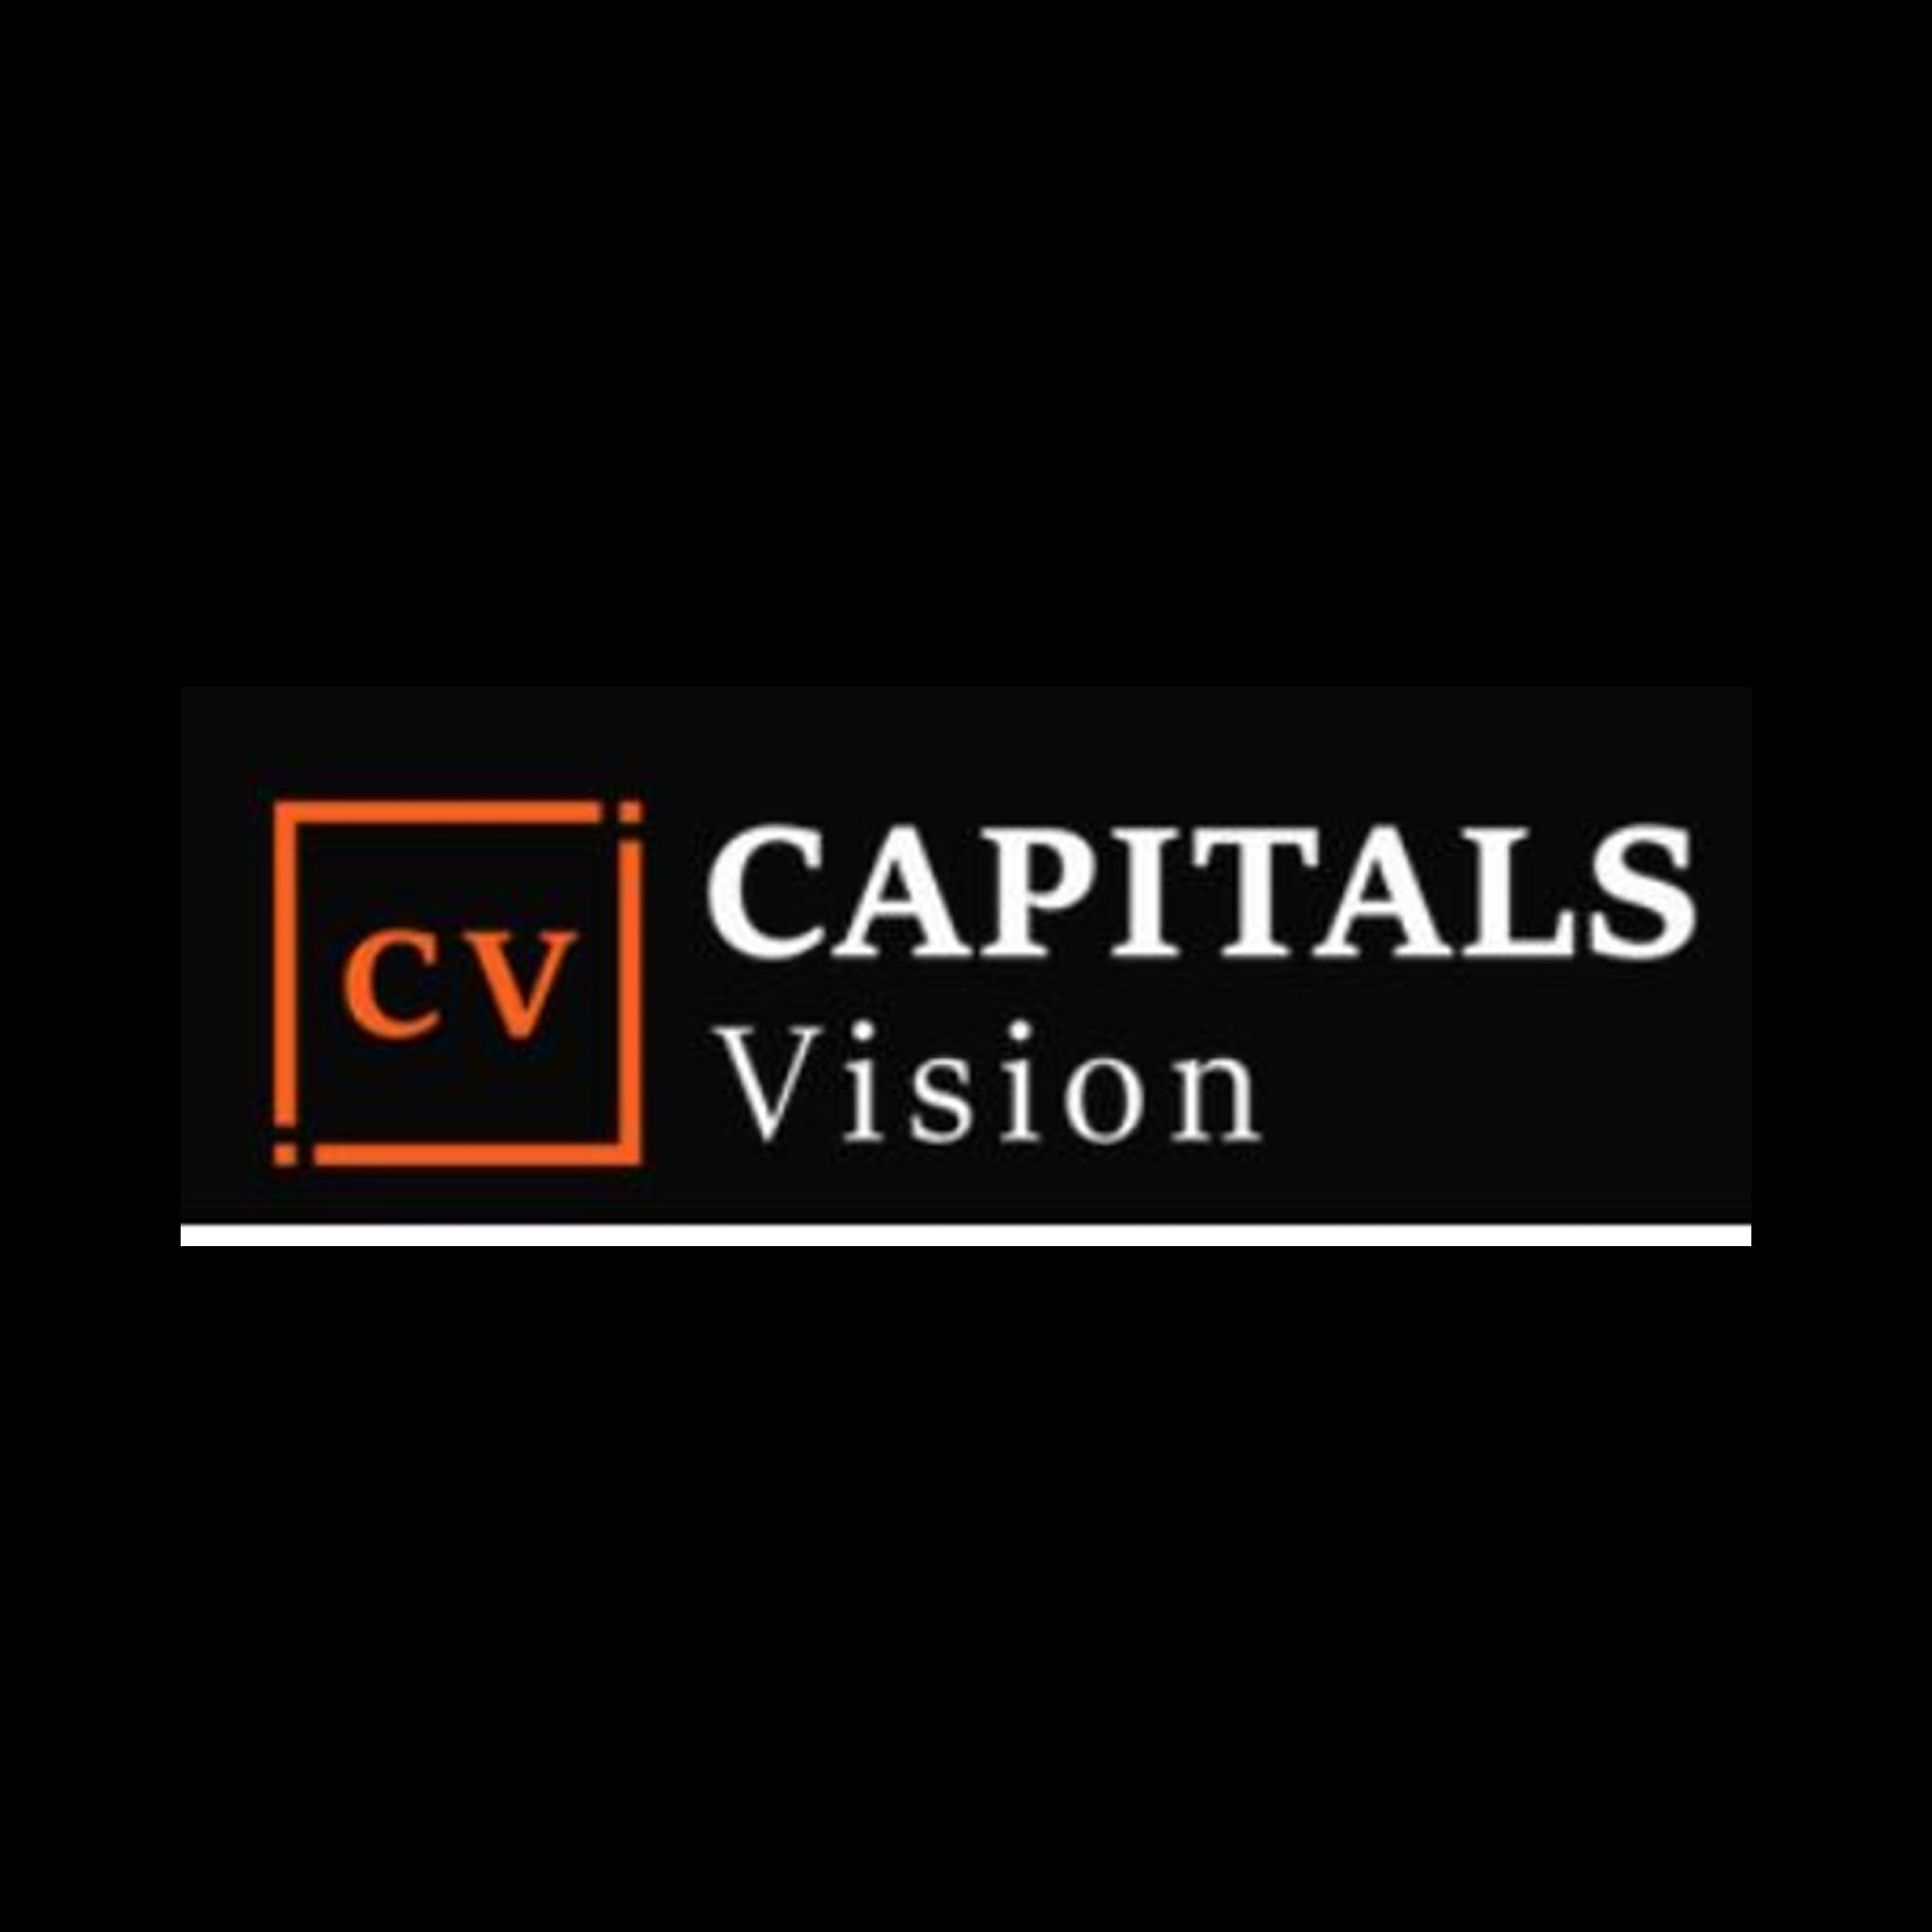 De ce aleg utilizatorii Capitals Vision